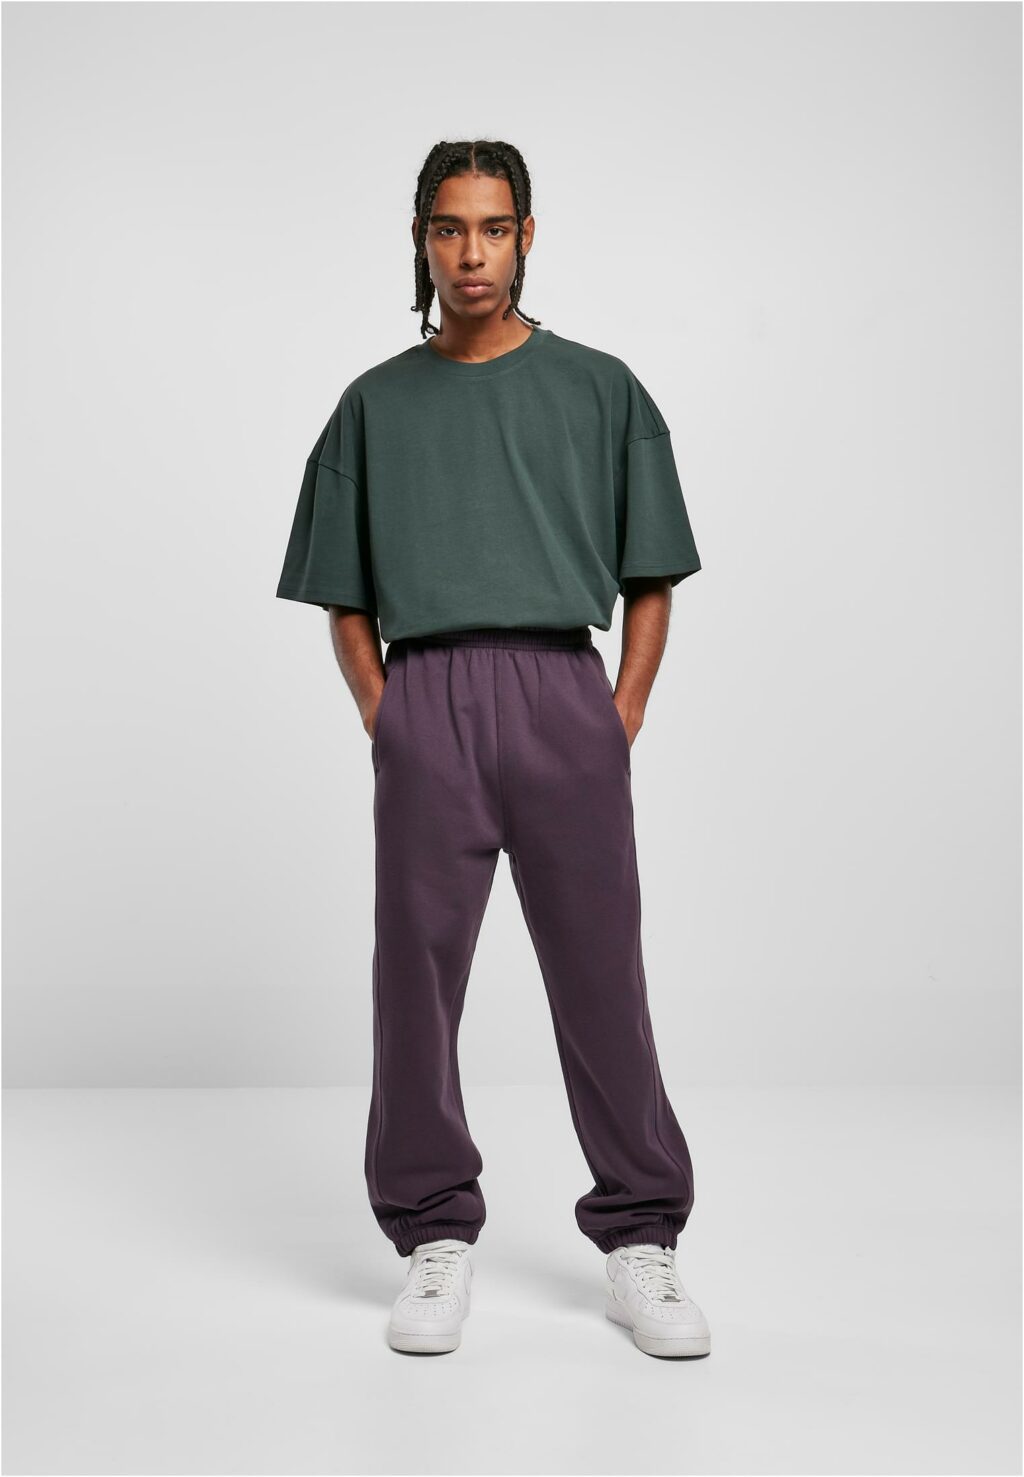 Urban Classics Sweatpants purplenight TB014B